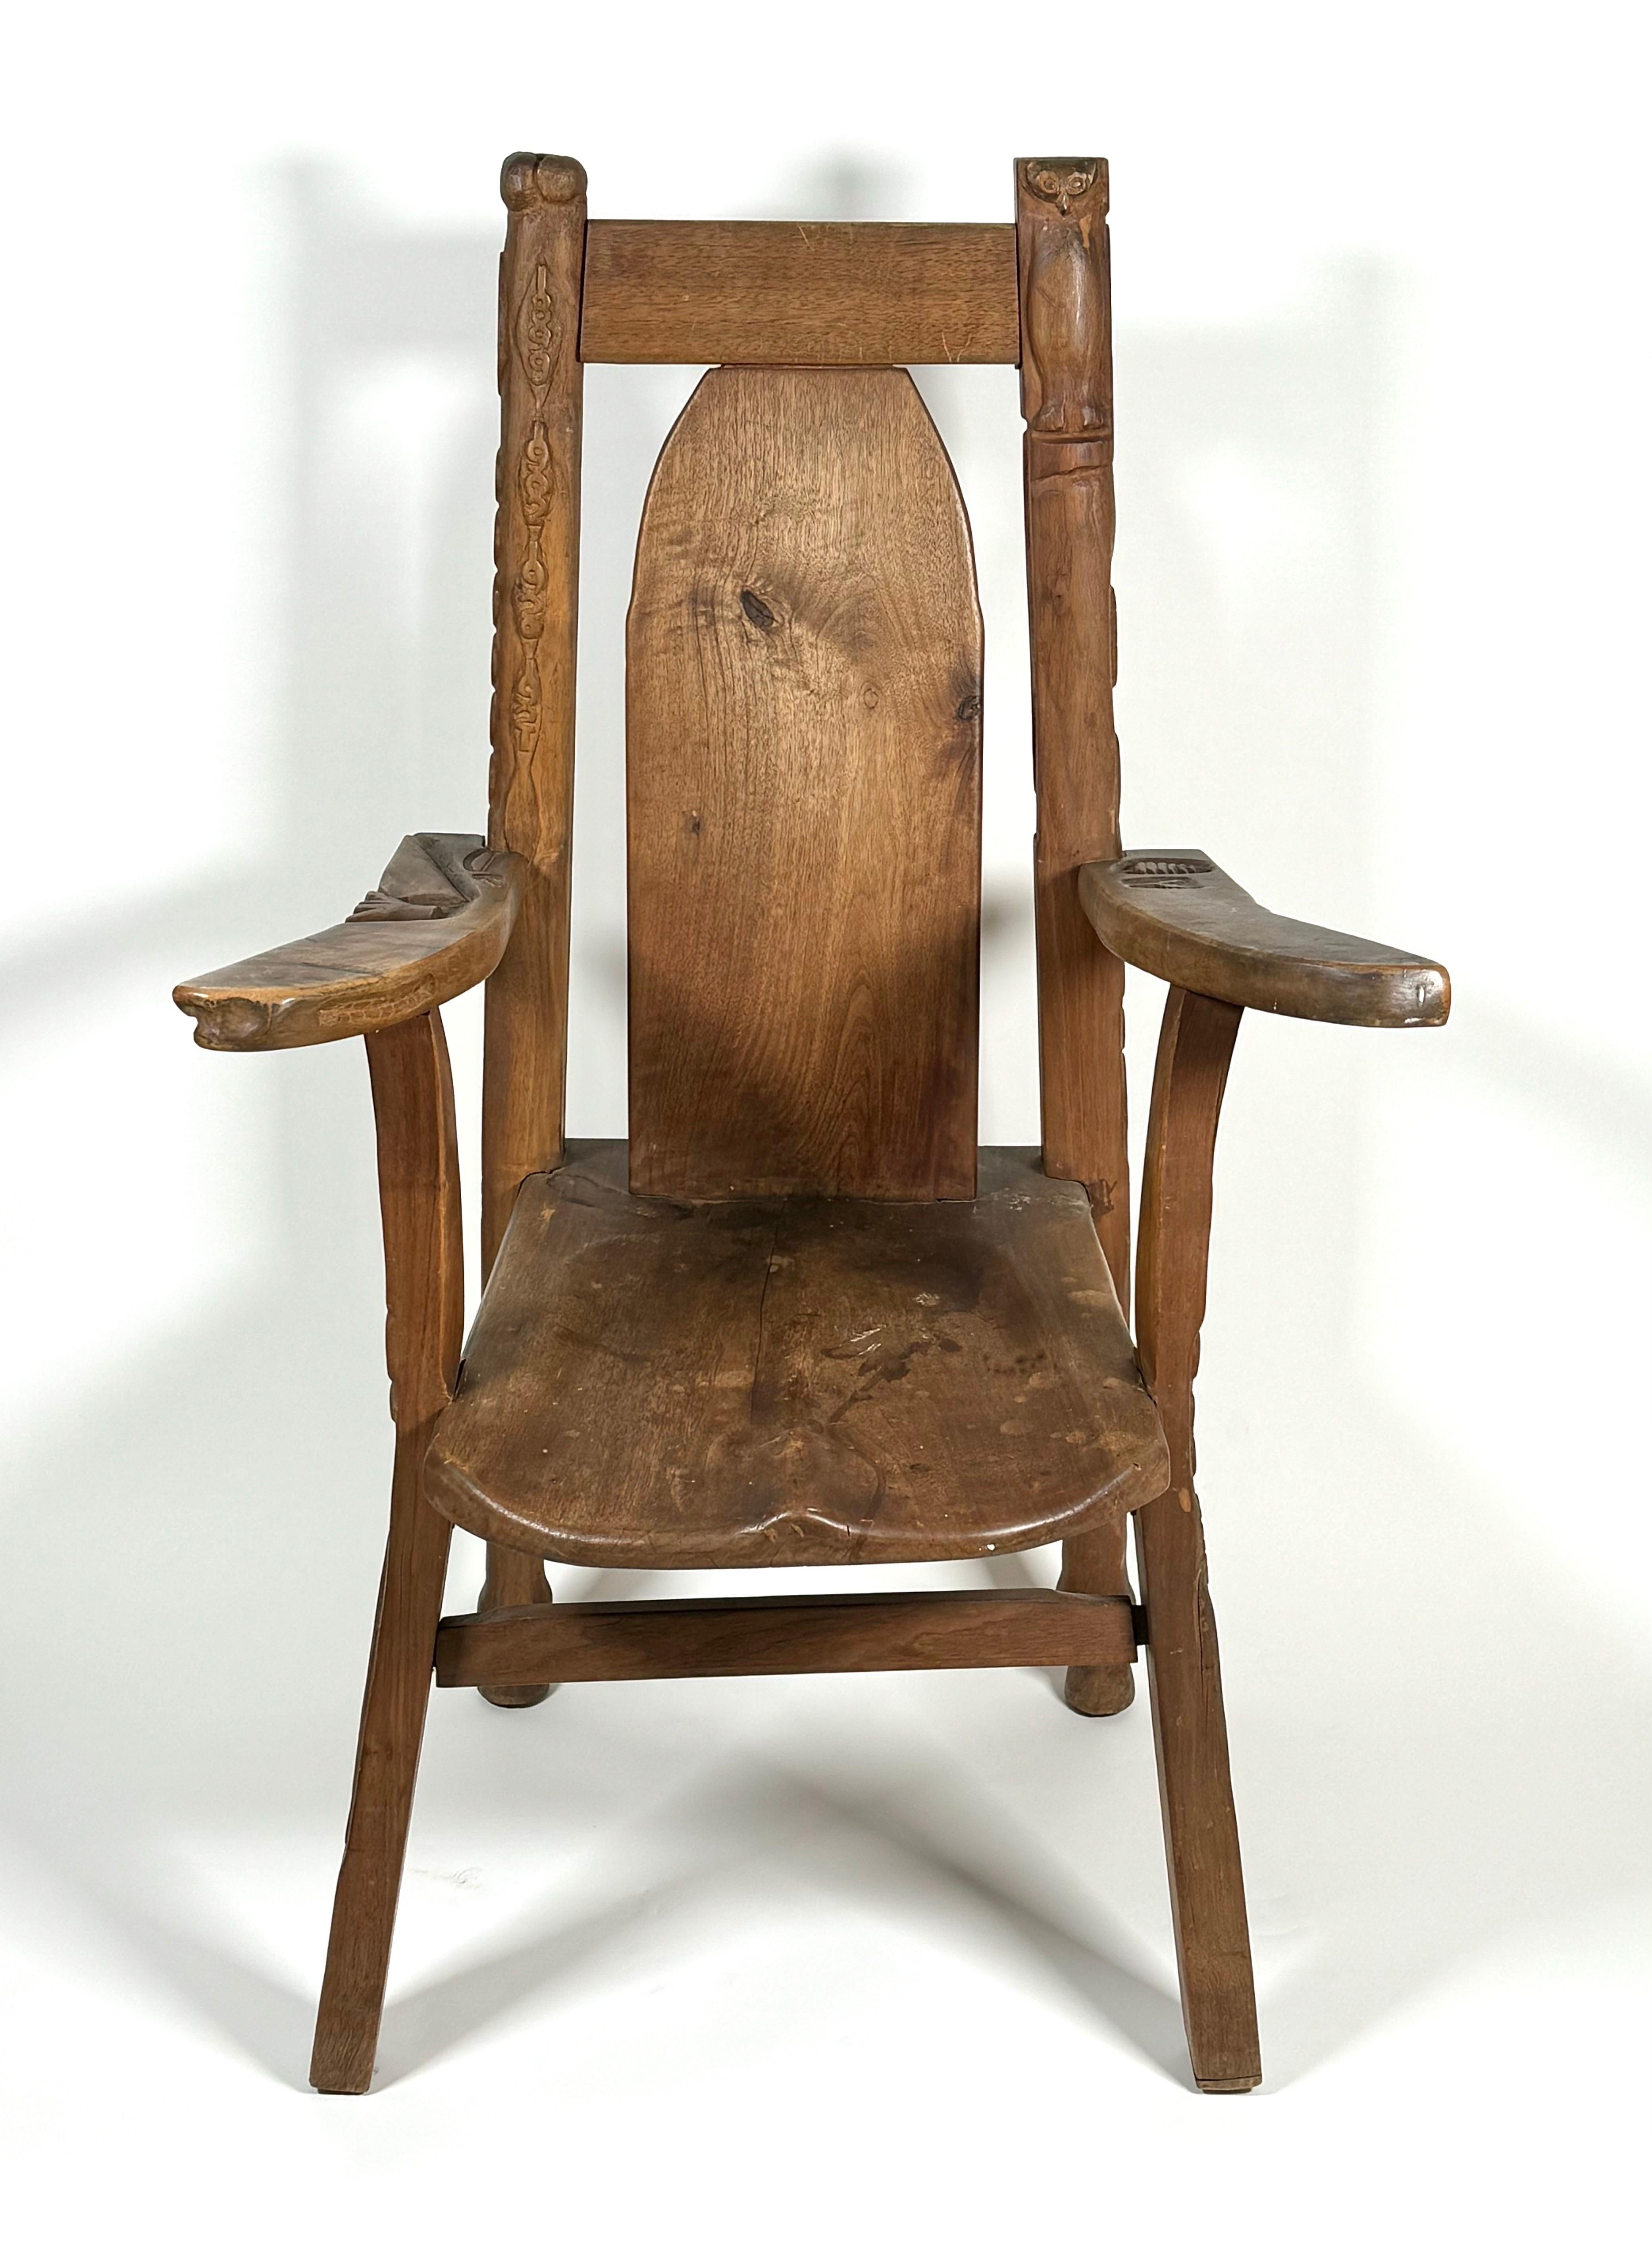 Handgeschnitzter Sessel aus dem Jahr 1918. Der gesamte Sessel ist mit geschnitzten Motiven verziert. Verschiedene Bilder, die aus der Natur und anderen Einflüssen abgeleitet sind und teilweise surreal anmuten. Mögliche Verbindung mit der